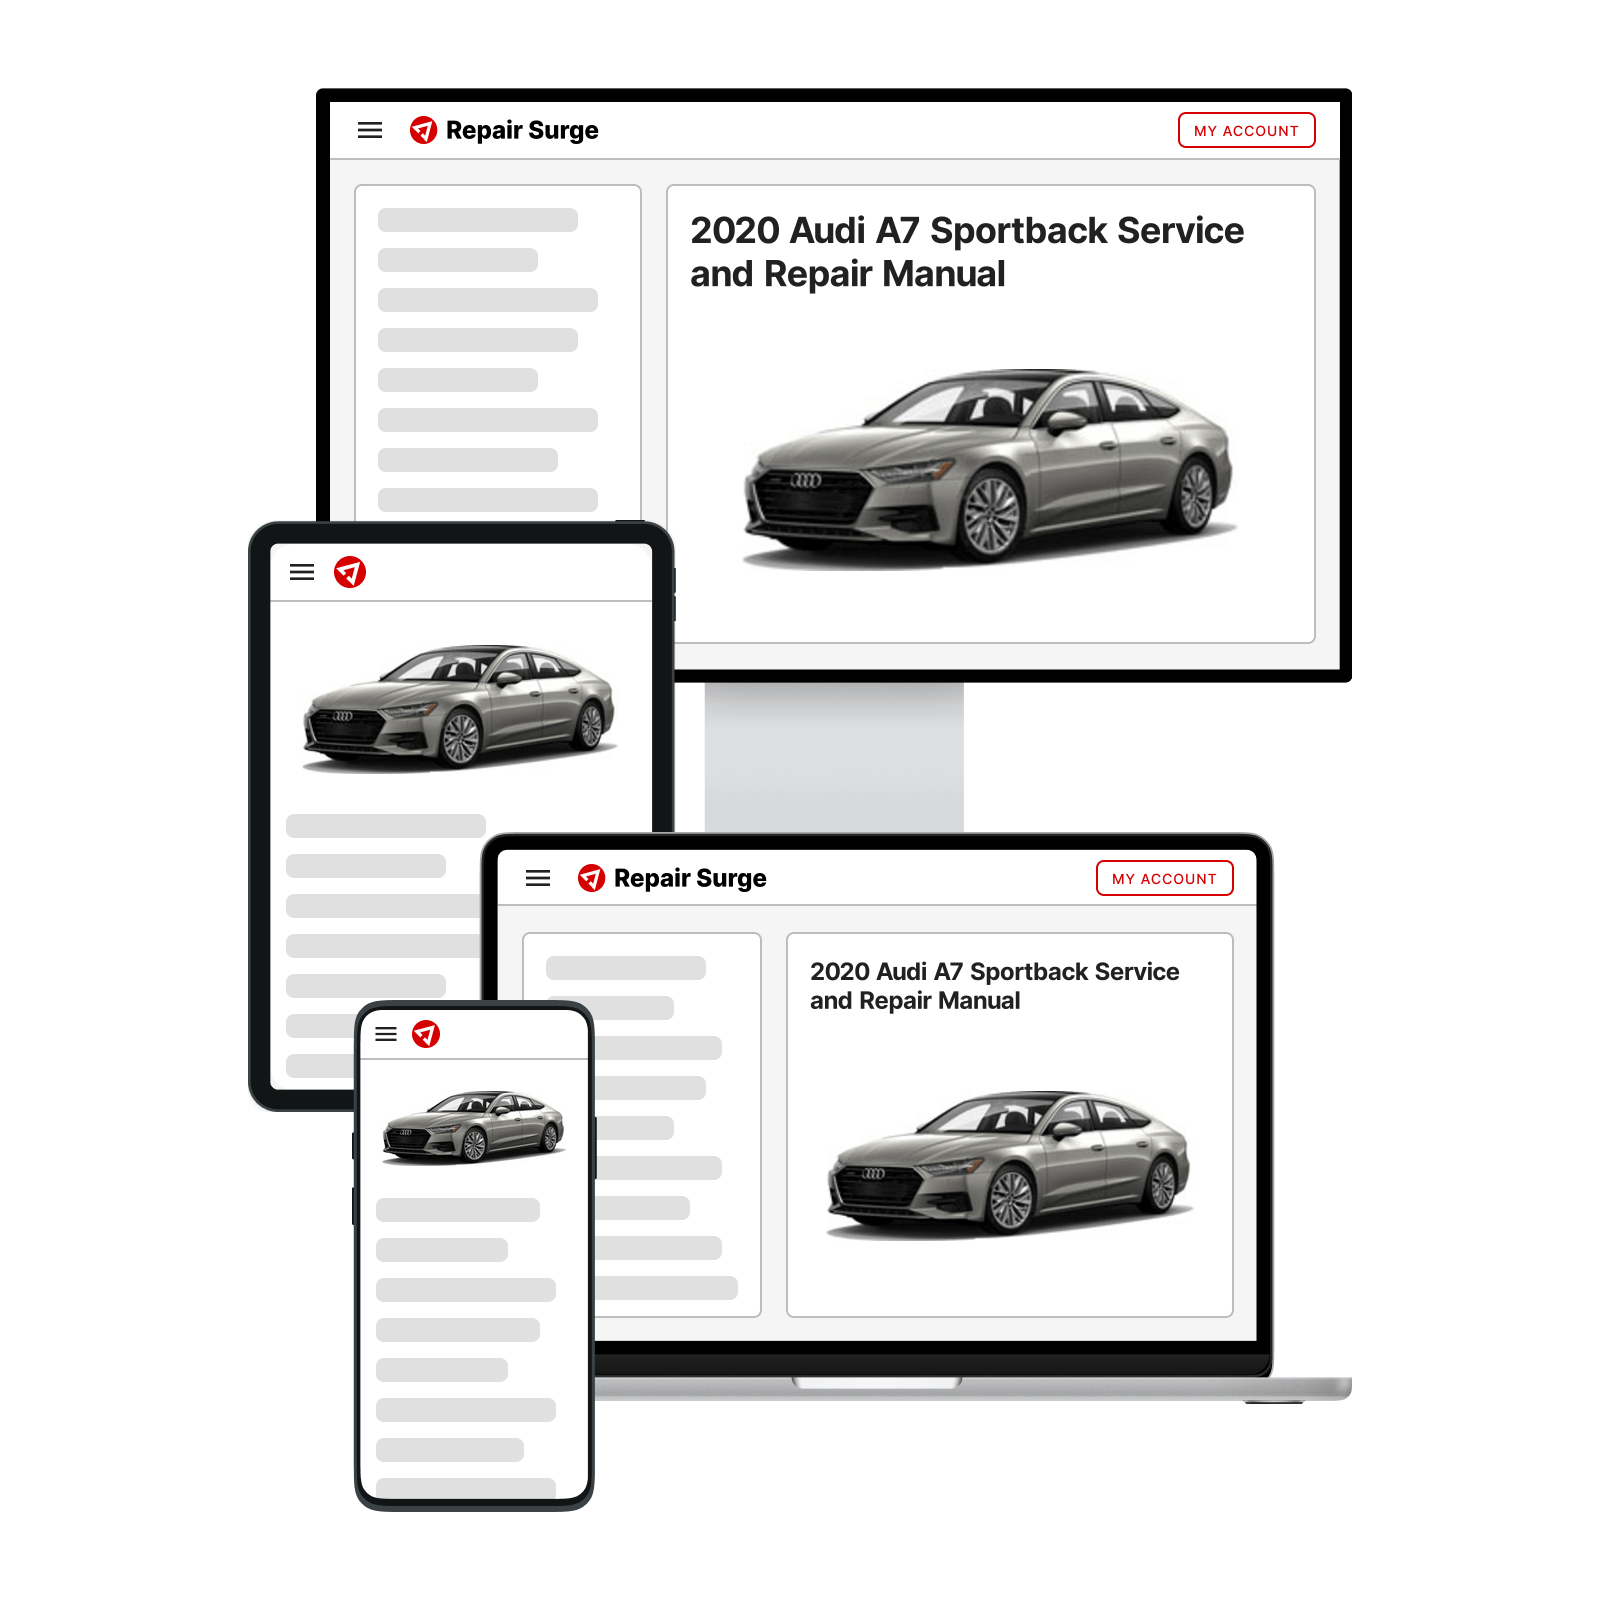 2020 Audi A7 Sportback service and repair manual hero image